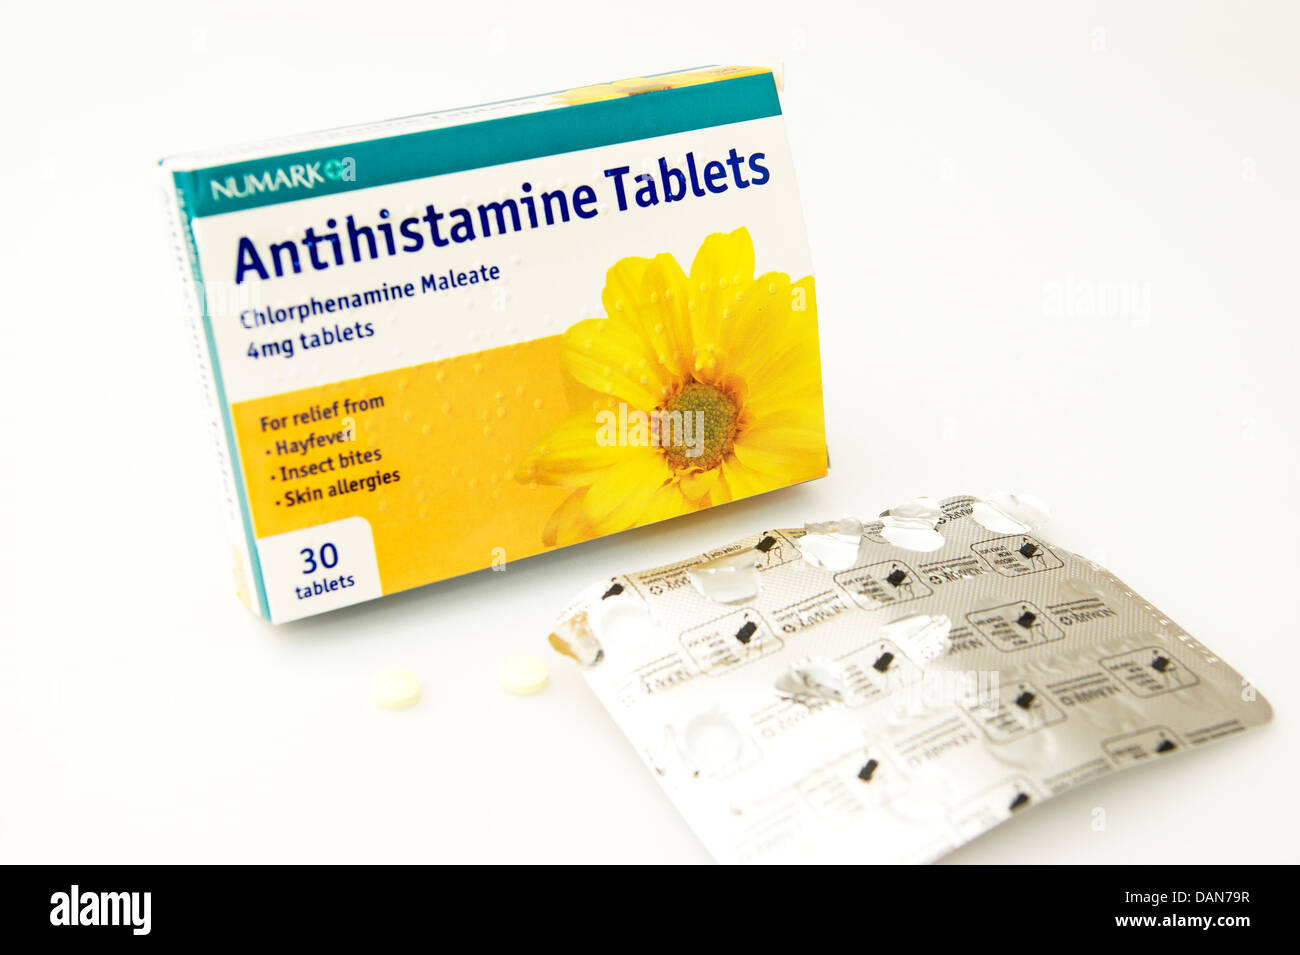 Antihistamin-Tabletten (Chlorphenamin Maleat) für Heuschnupfen  Insektenstiche & Hautallergien Stockfotografie - Alamy